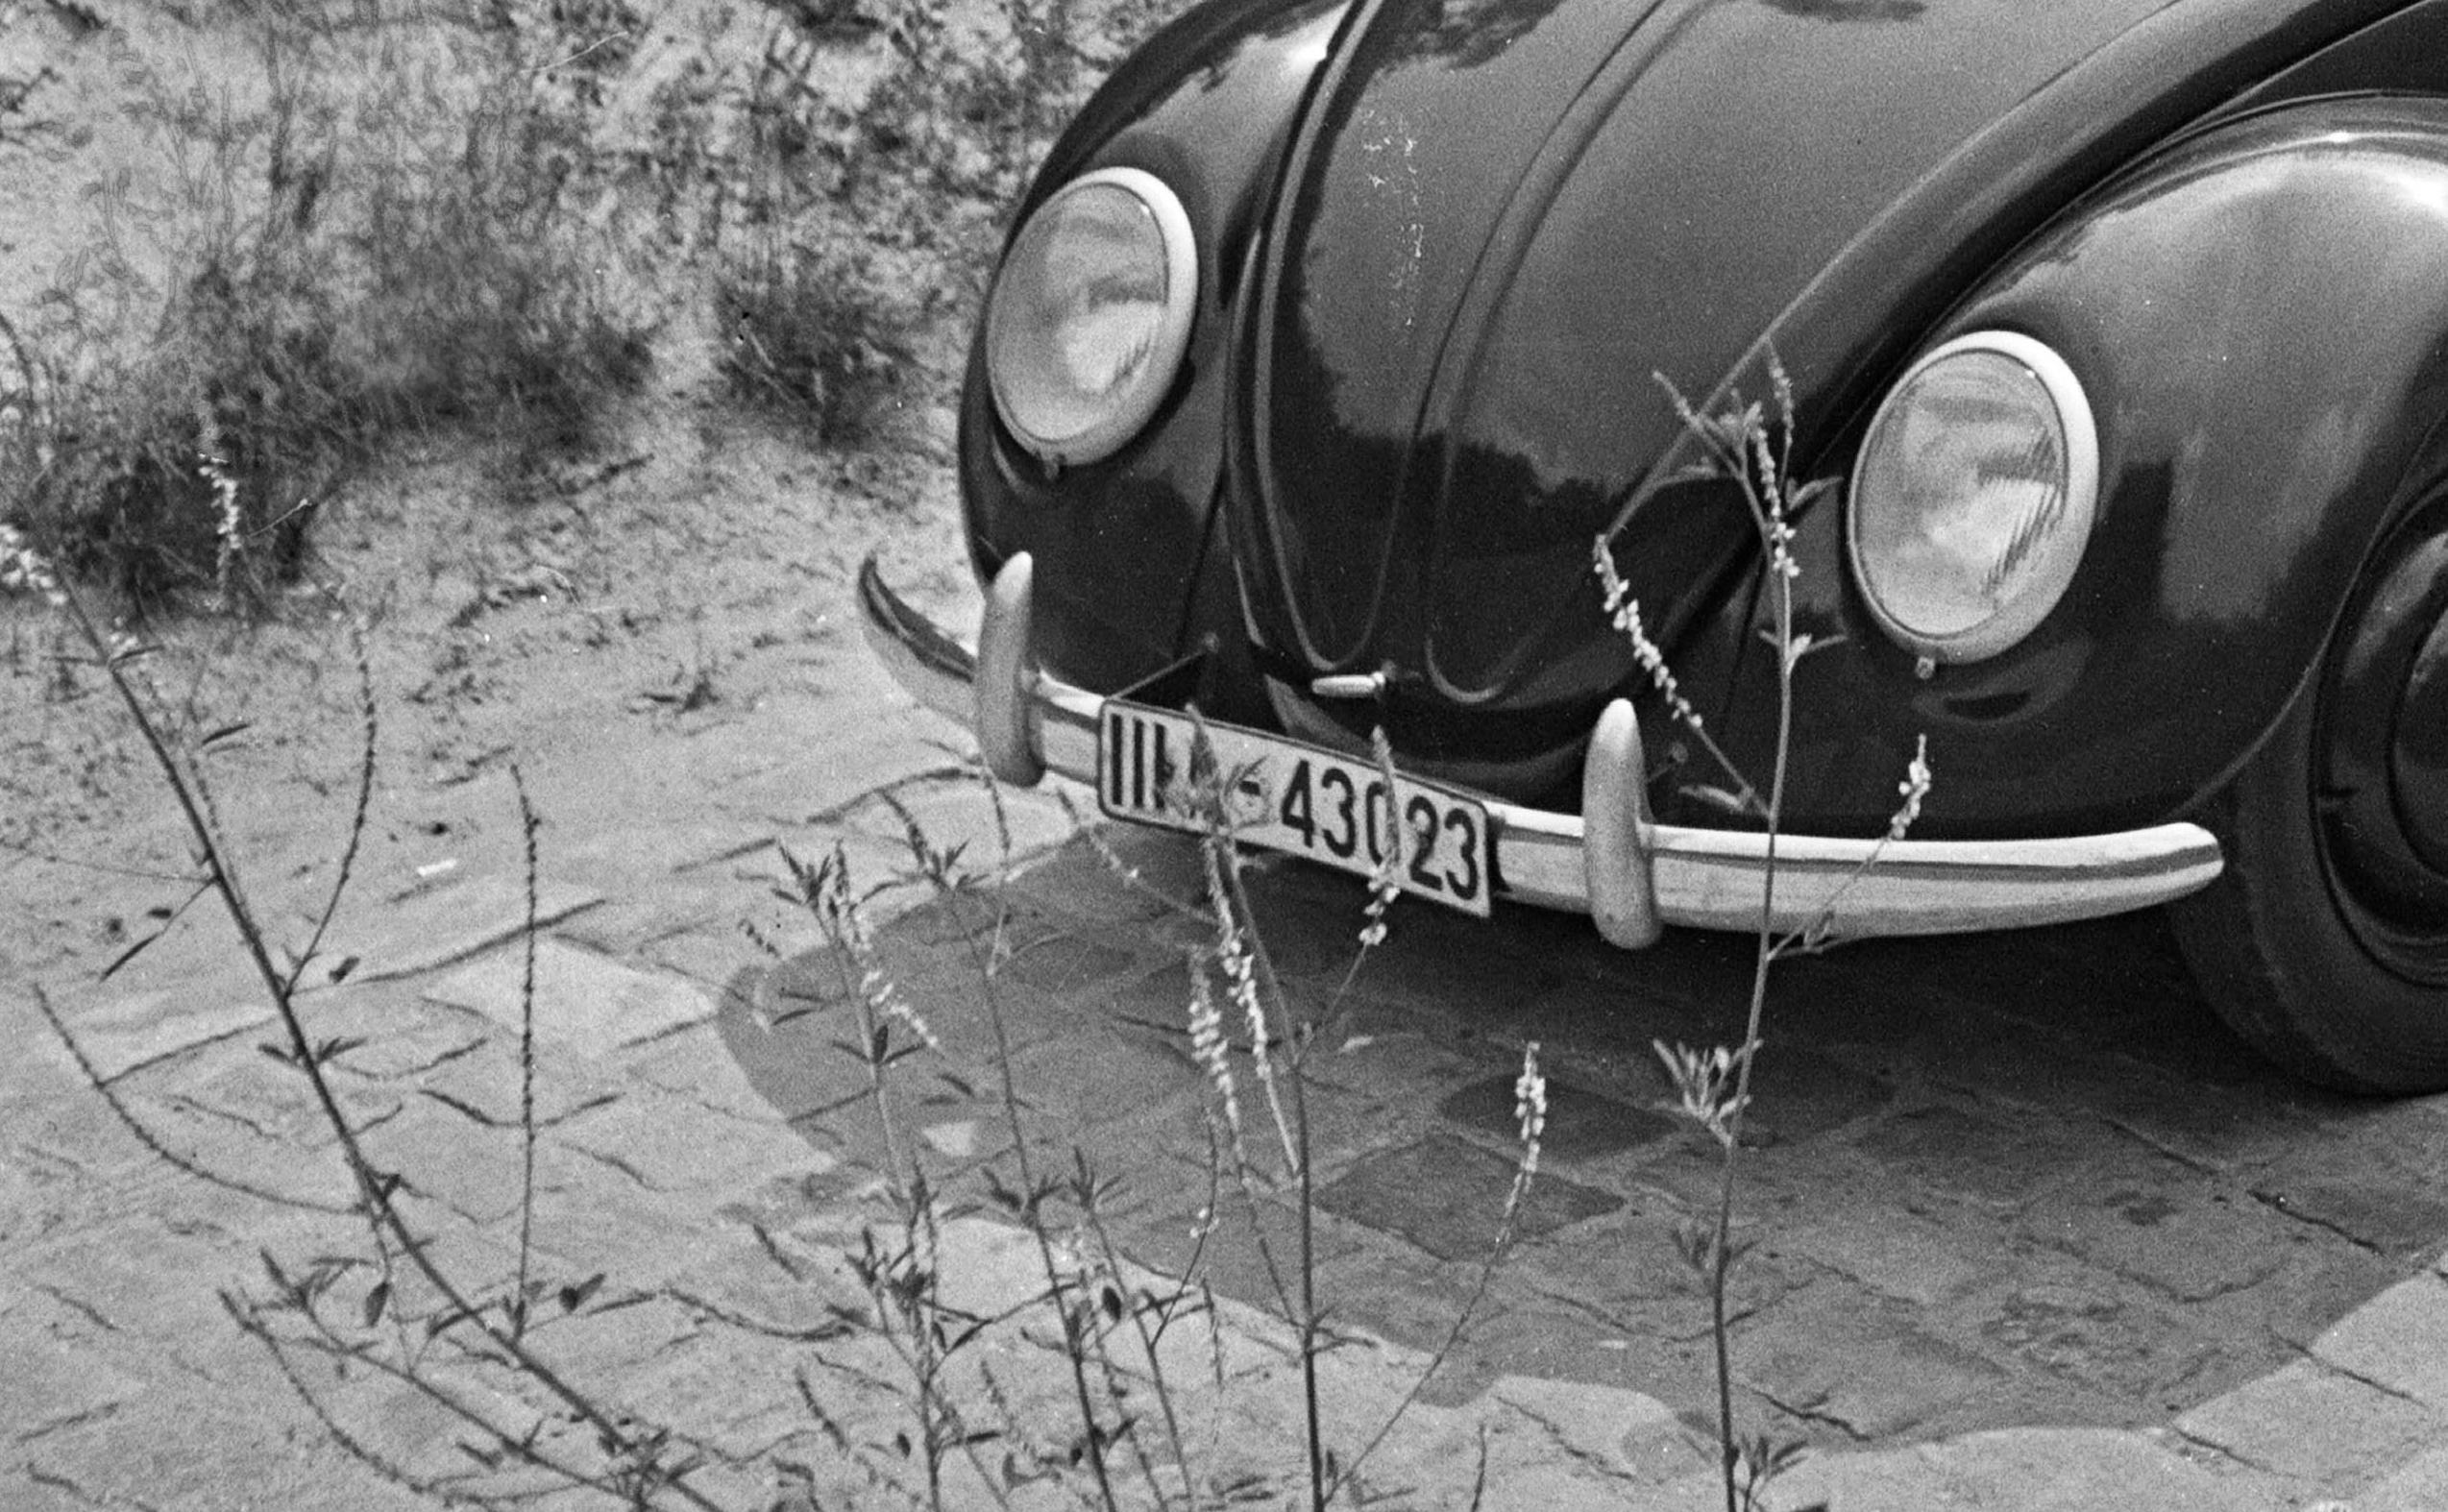  Voyage en voiture dans le scarabée de Volkswagen, Allemagne, 1939 Imprimé ultérieurement  - Moderne Photograph par Karl Heinrich Lämmel